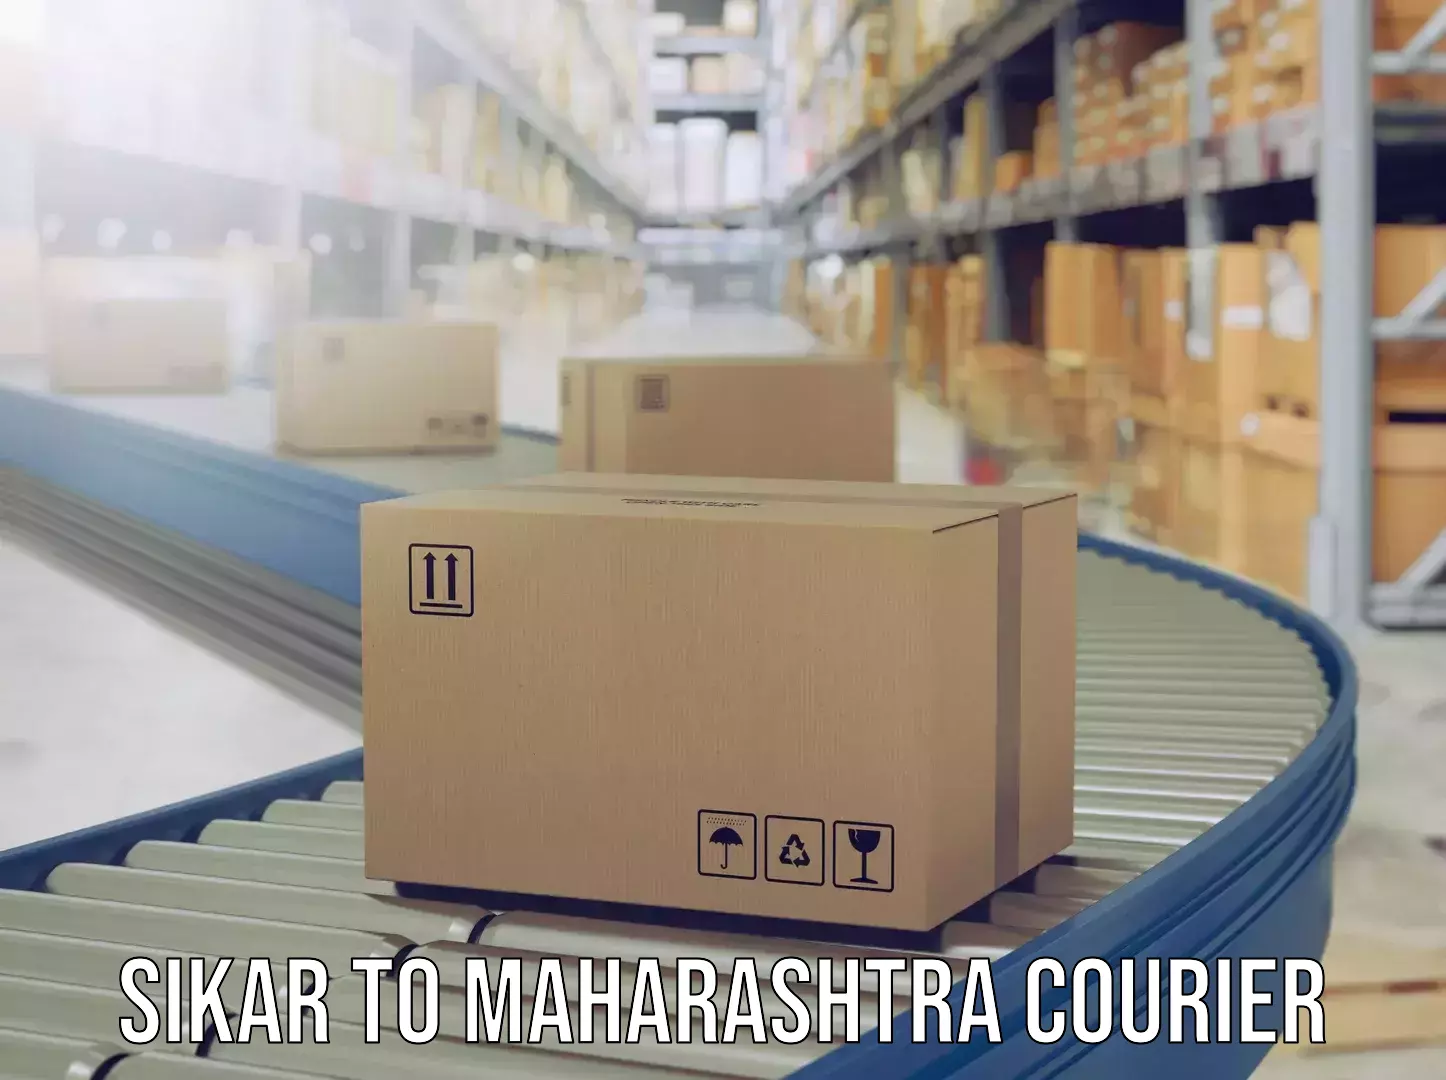 Luggage shipment processing Sikar to Ahmednagar